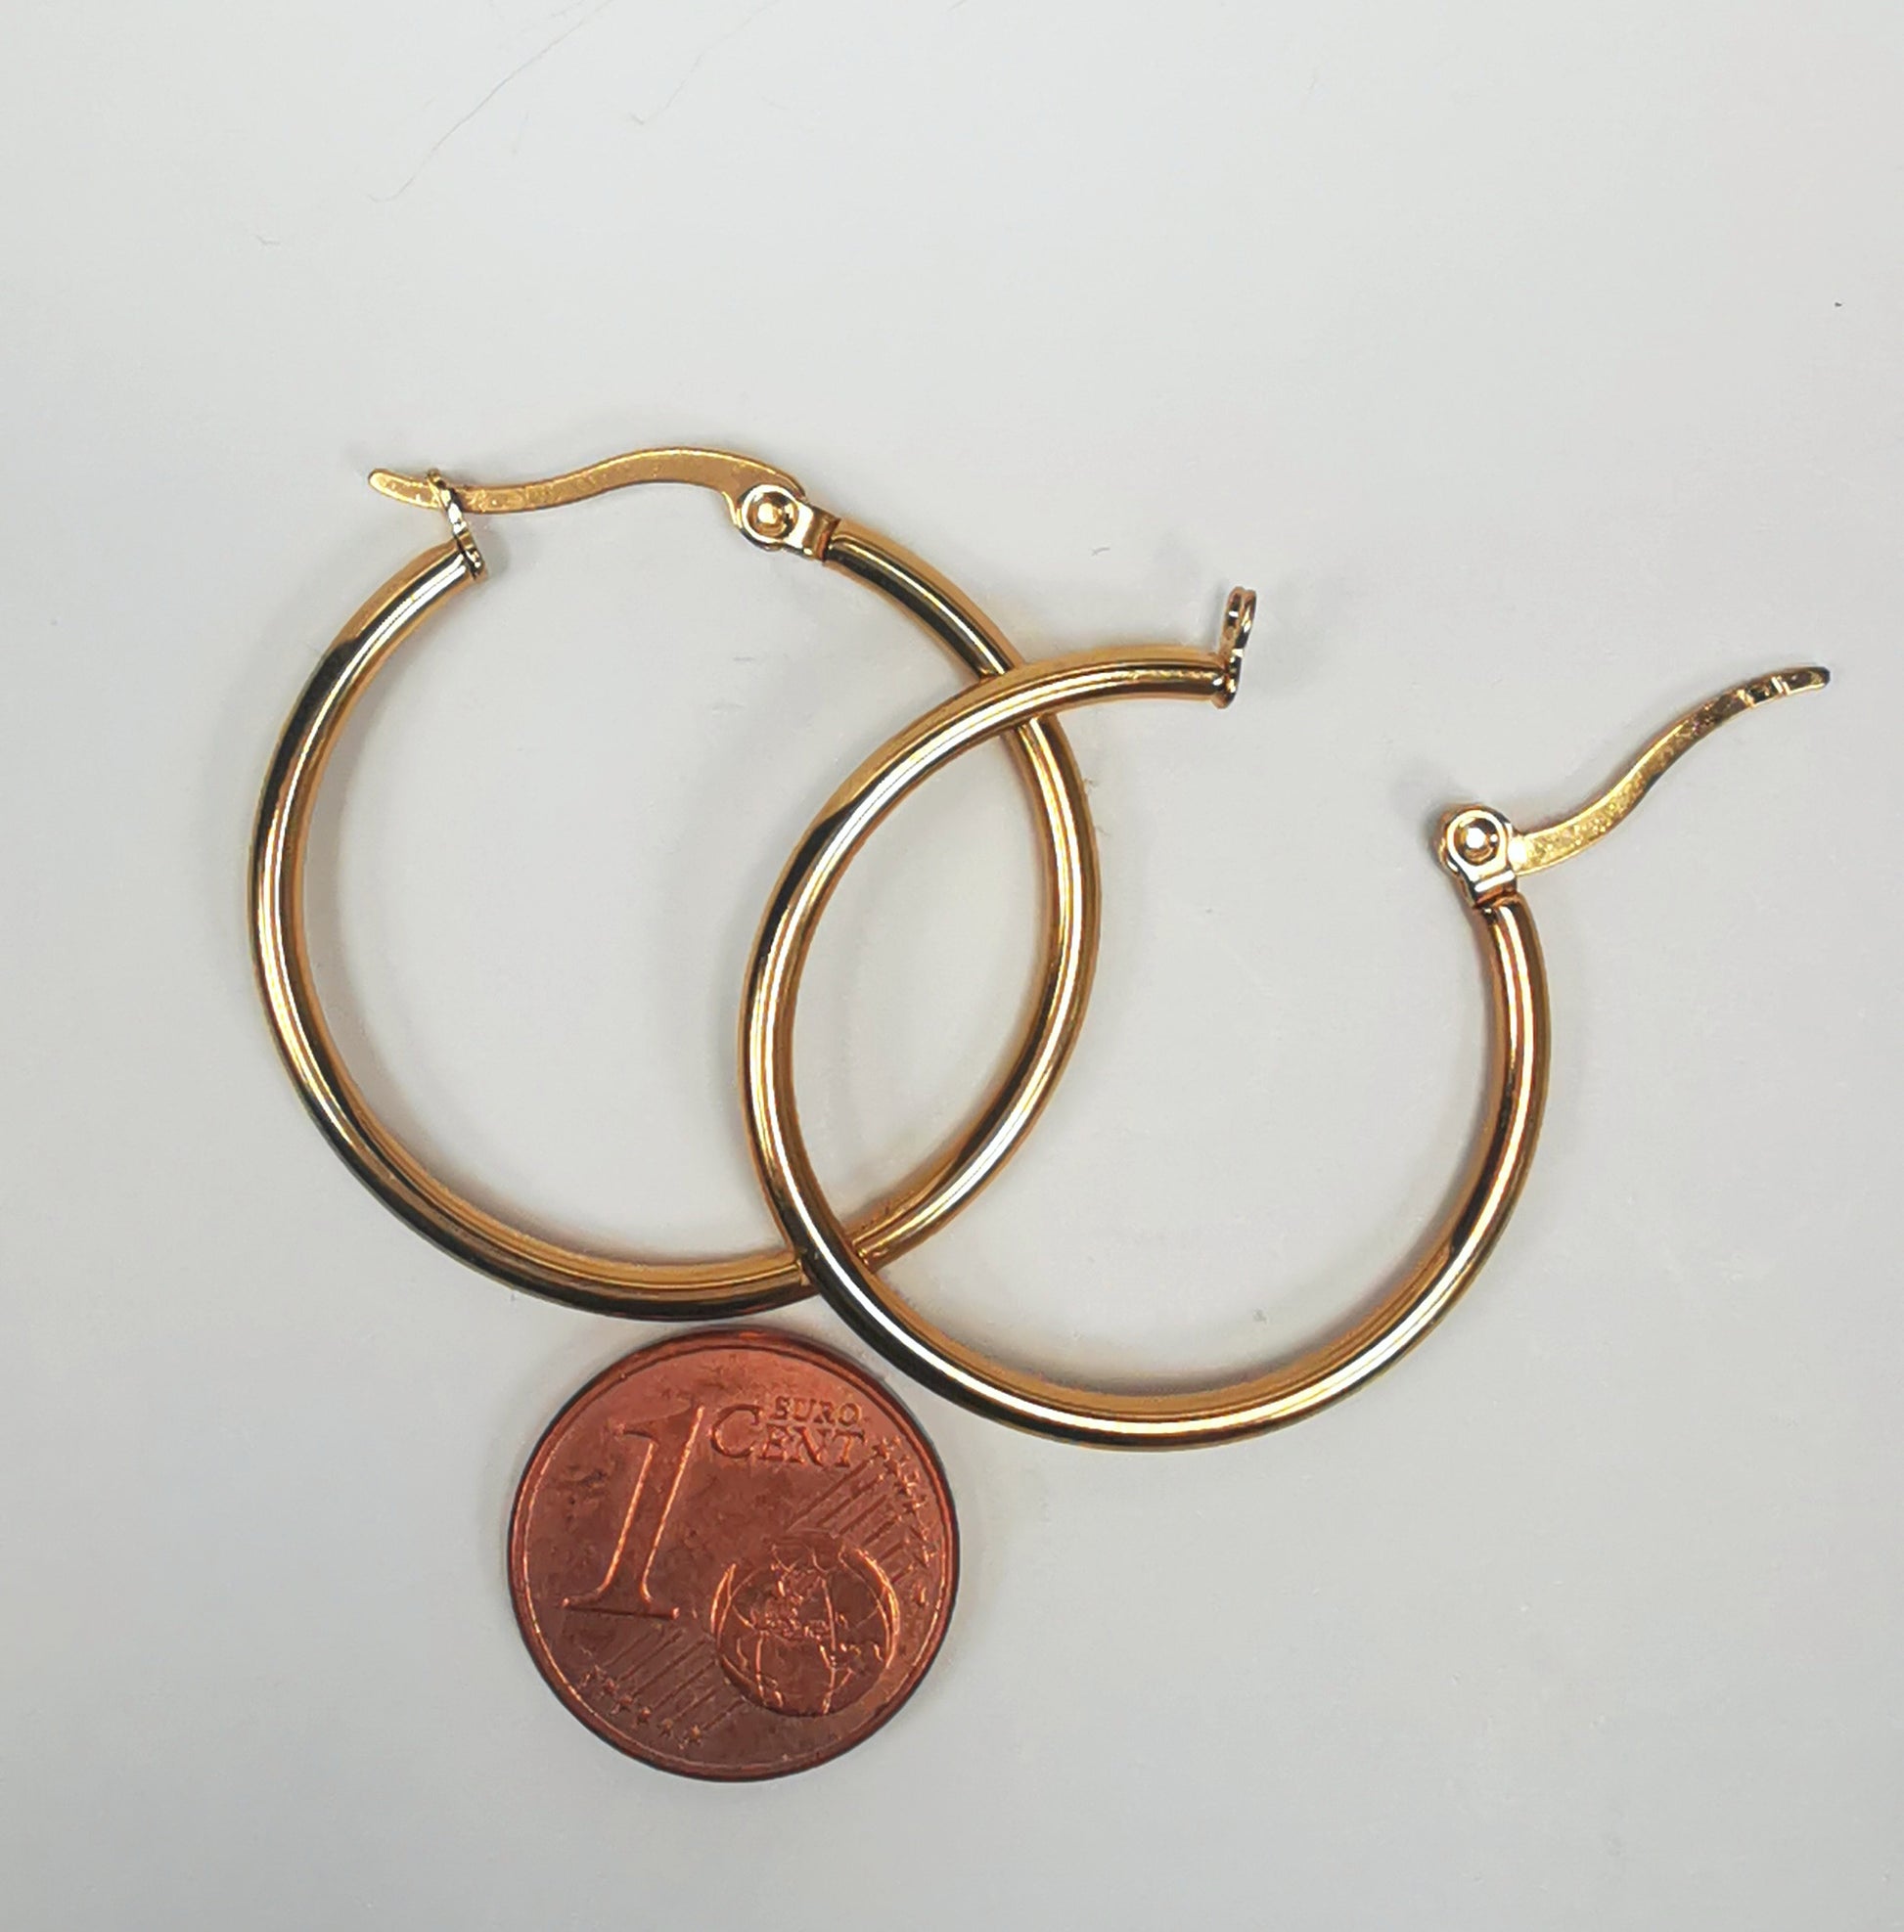 Boucles d'oreilles créoles inox plaqué or, diamètre 30mm, fil de 2mm. Présentées posées sur fond blanc, l'une sur l'autre, celle de droite fermoir ouvert, au dessus d'une pièce de 1 centime. Vue de dessus.